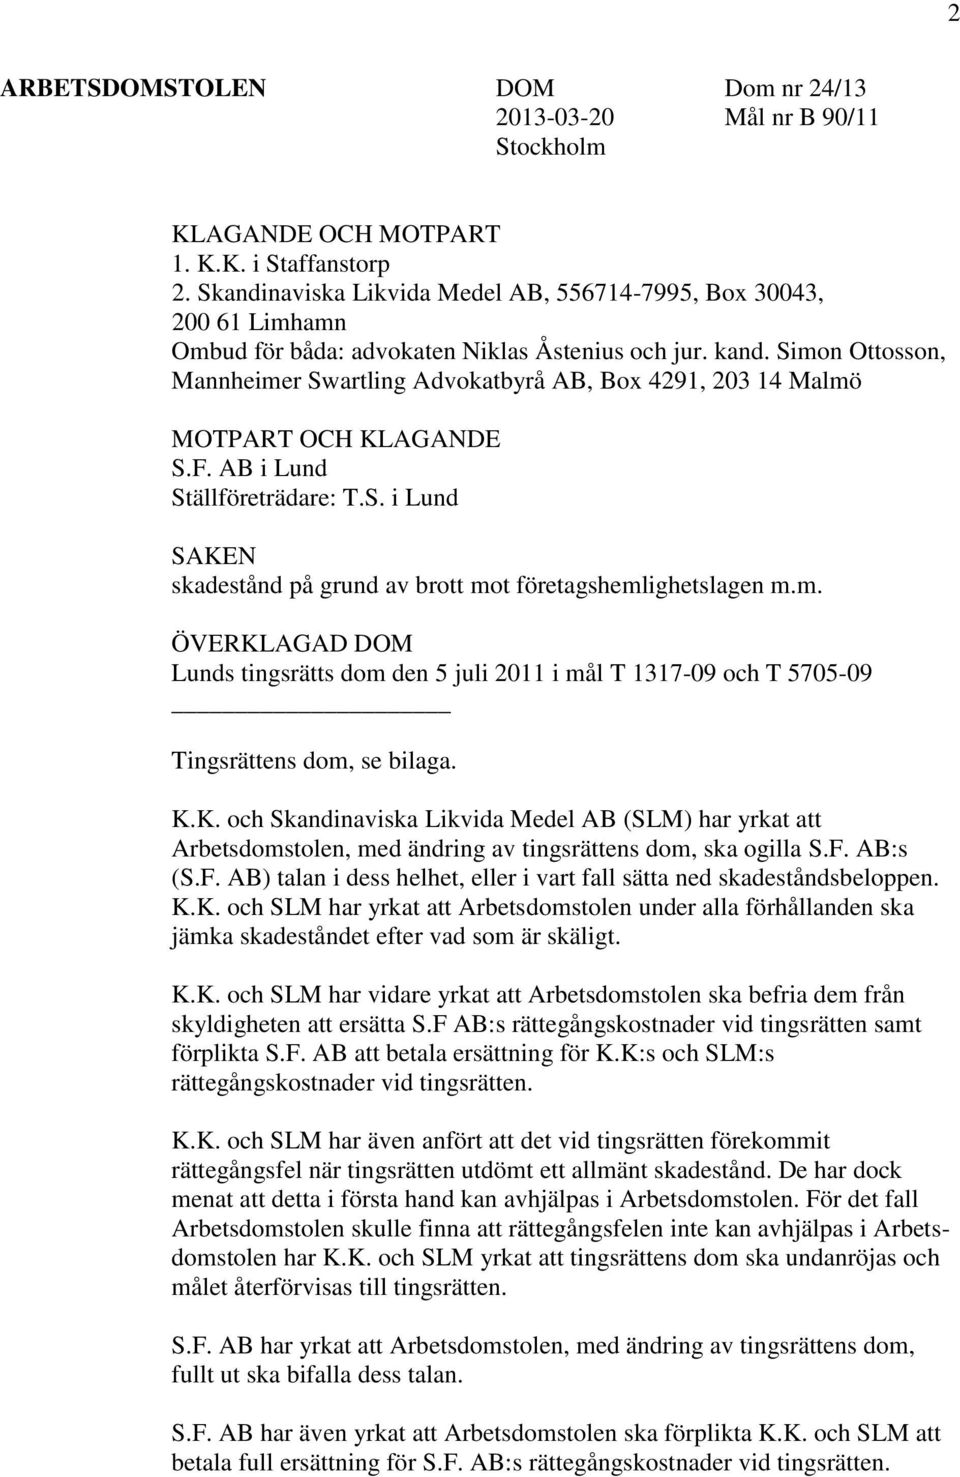 Simon Ottosson, Mannheimer Swartling Advokatbyrå AB, Box 4291, 203 14 Malmö MOTPART OCH KLAGANDE S.F. AB i Lund Ställföreträdare: T.S. i Lund SAKEN skadestånd på grund av brott mot företagshemlighetslagen m.